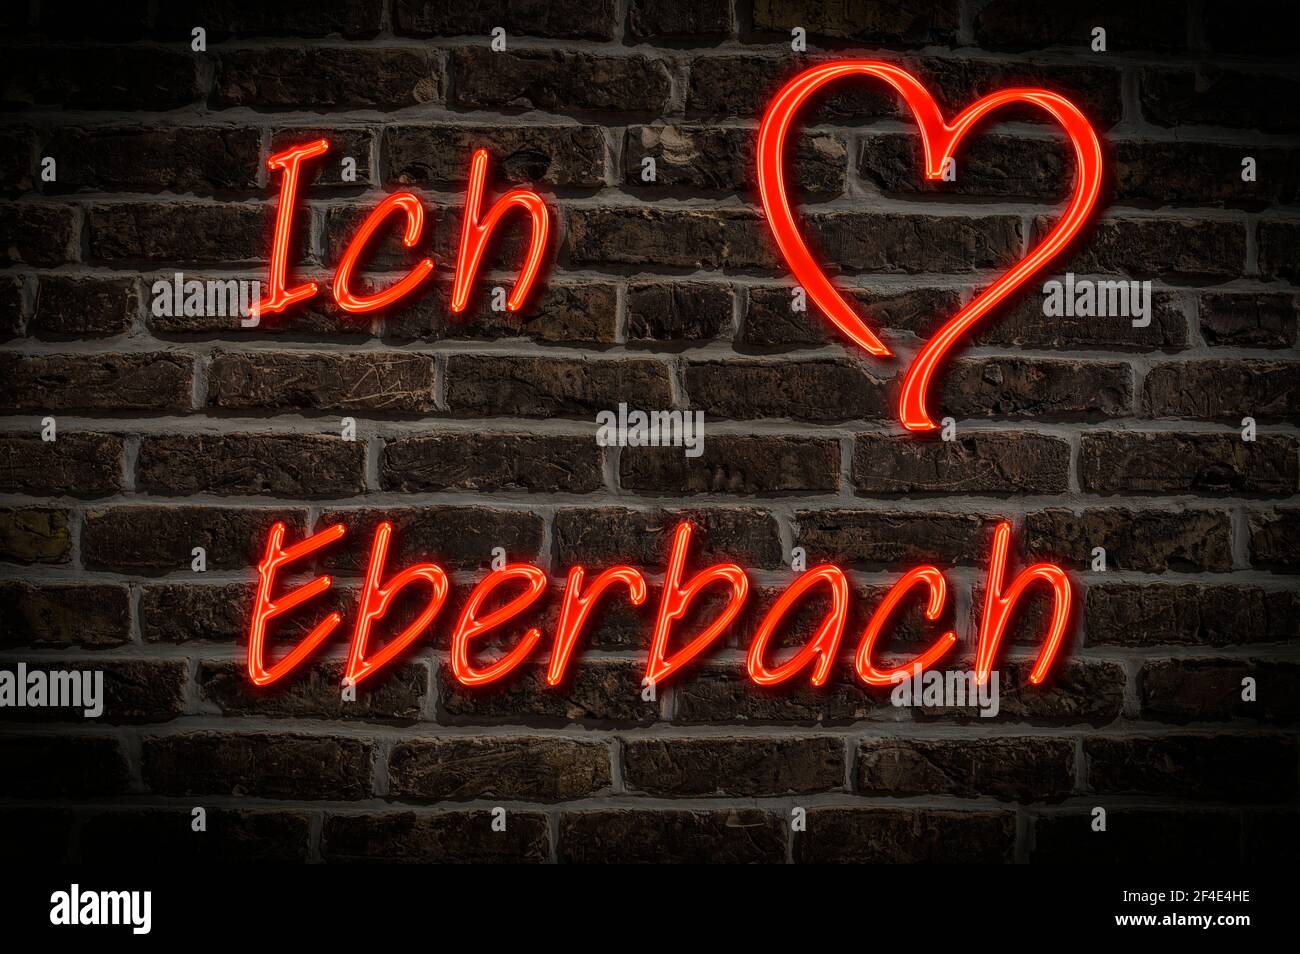 Leuchtreklame, Ich liebe Ebersbach, Baden-Württemberg, Deutschland, Europa | Illuminated advertising, I love Ebersbach, Baden-Württemberg, Germany, Eu Stock Photo